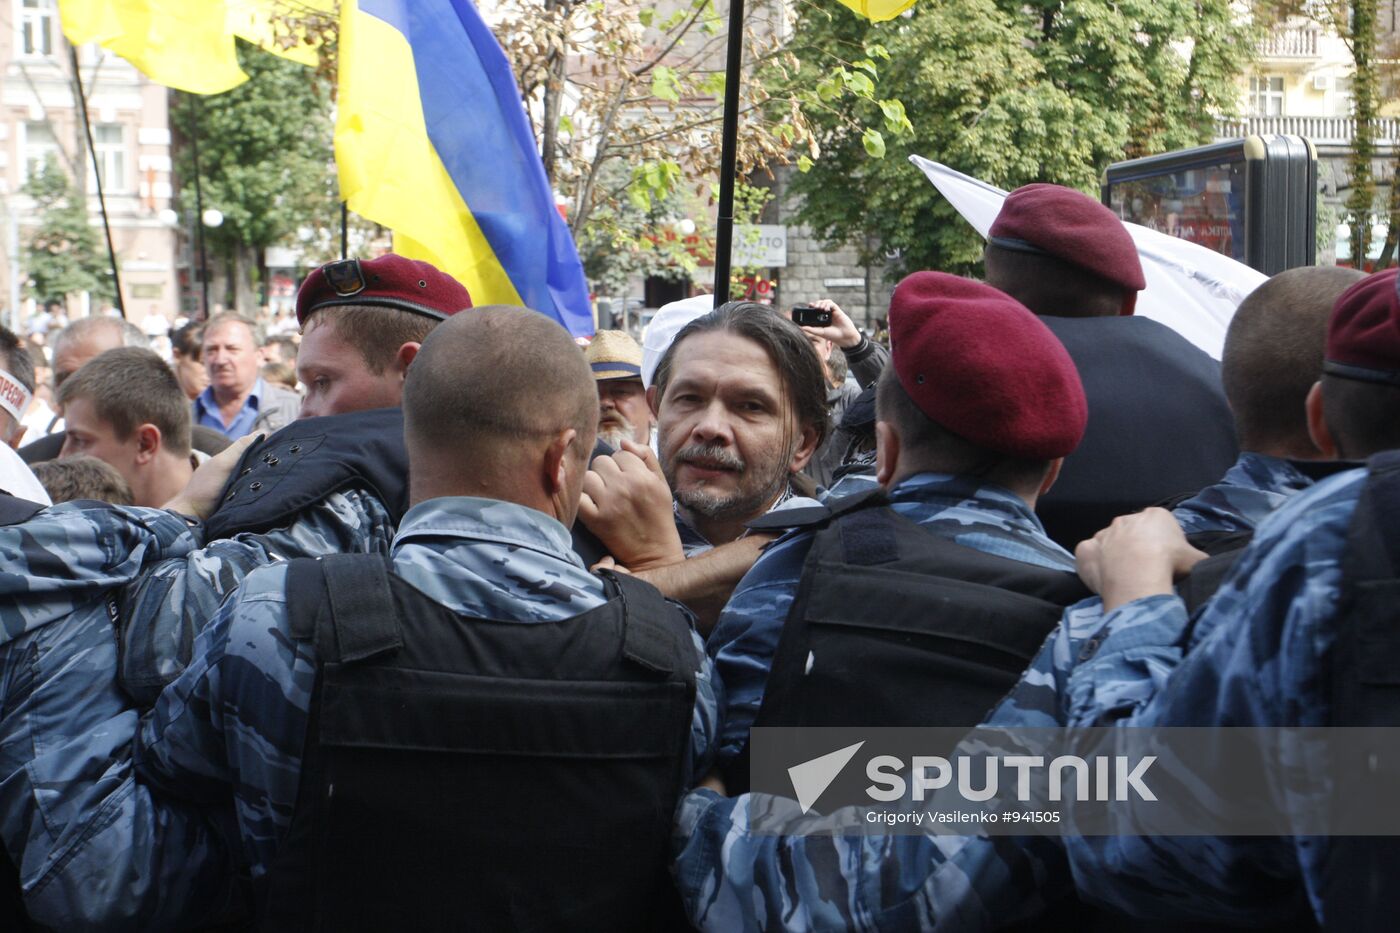 Ukraine's ex-prime minister Yulia Tymoshenko arrested in Kiev